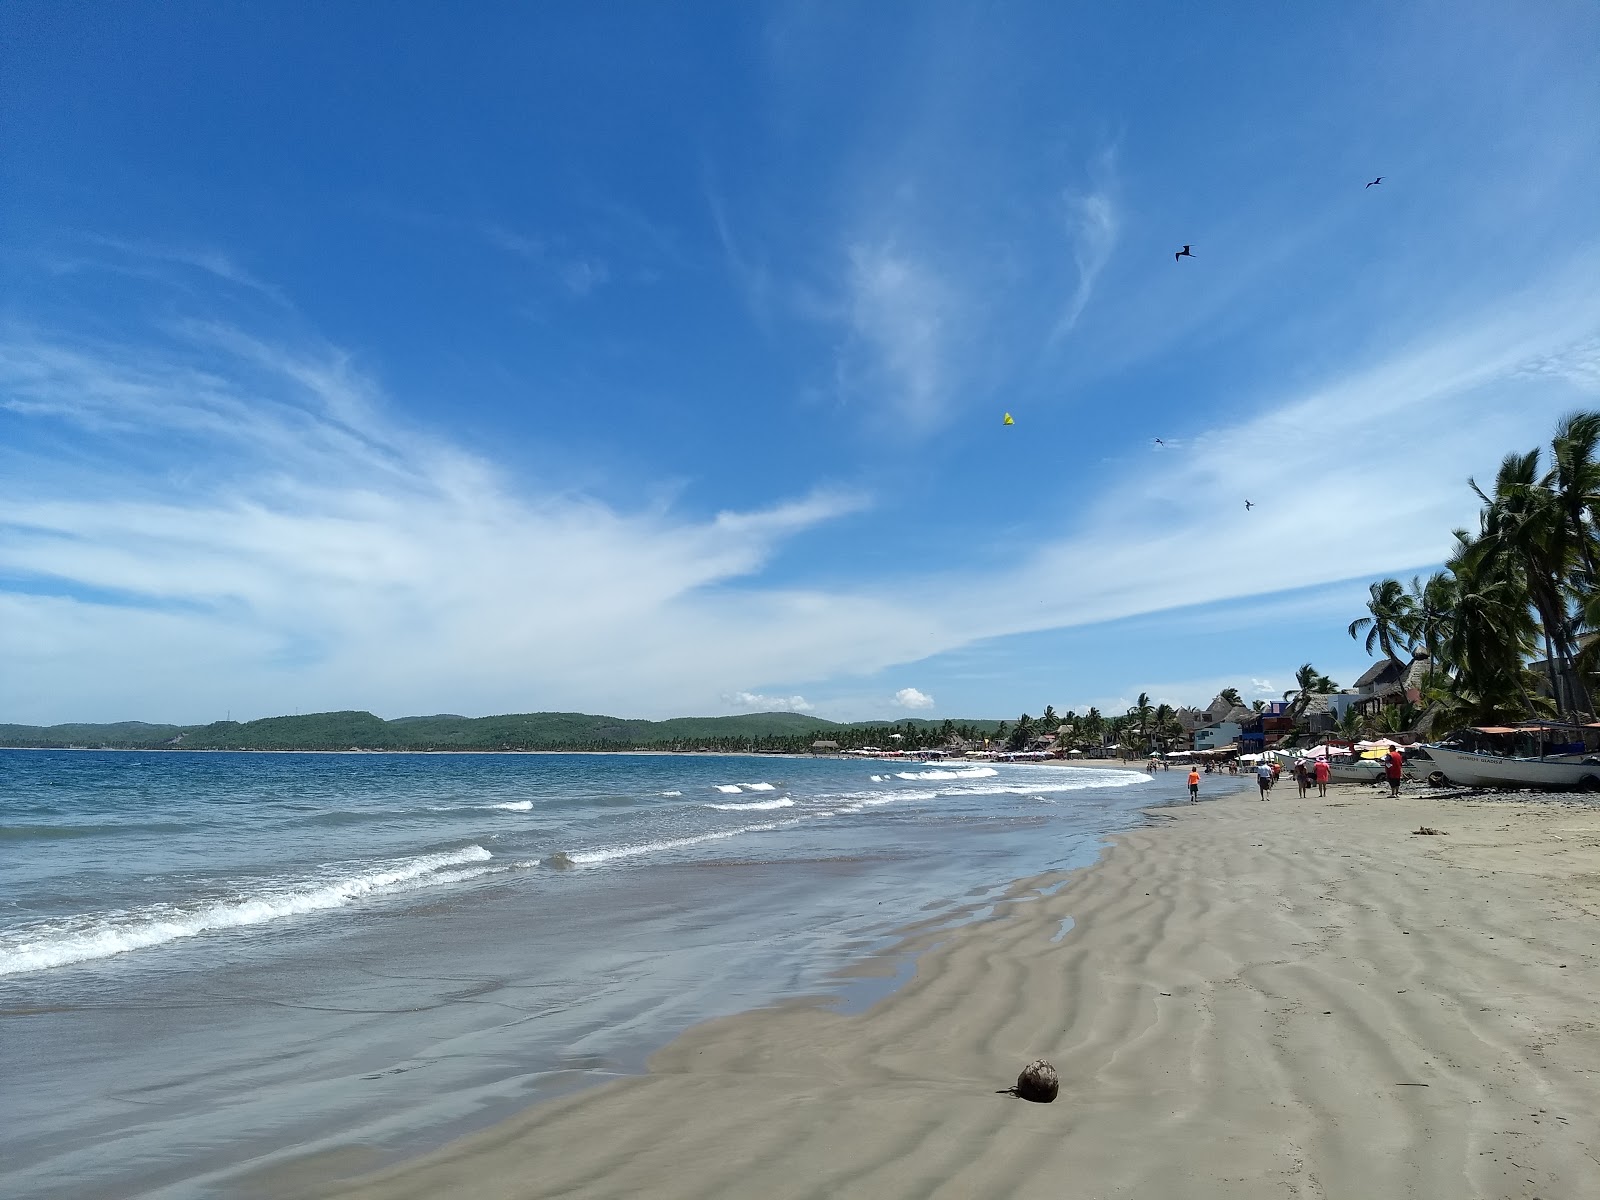 Foto af Playa La Manzanilla - populært sted blandt afslapningskendere